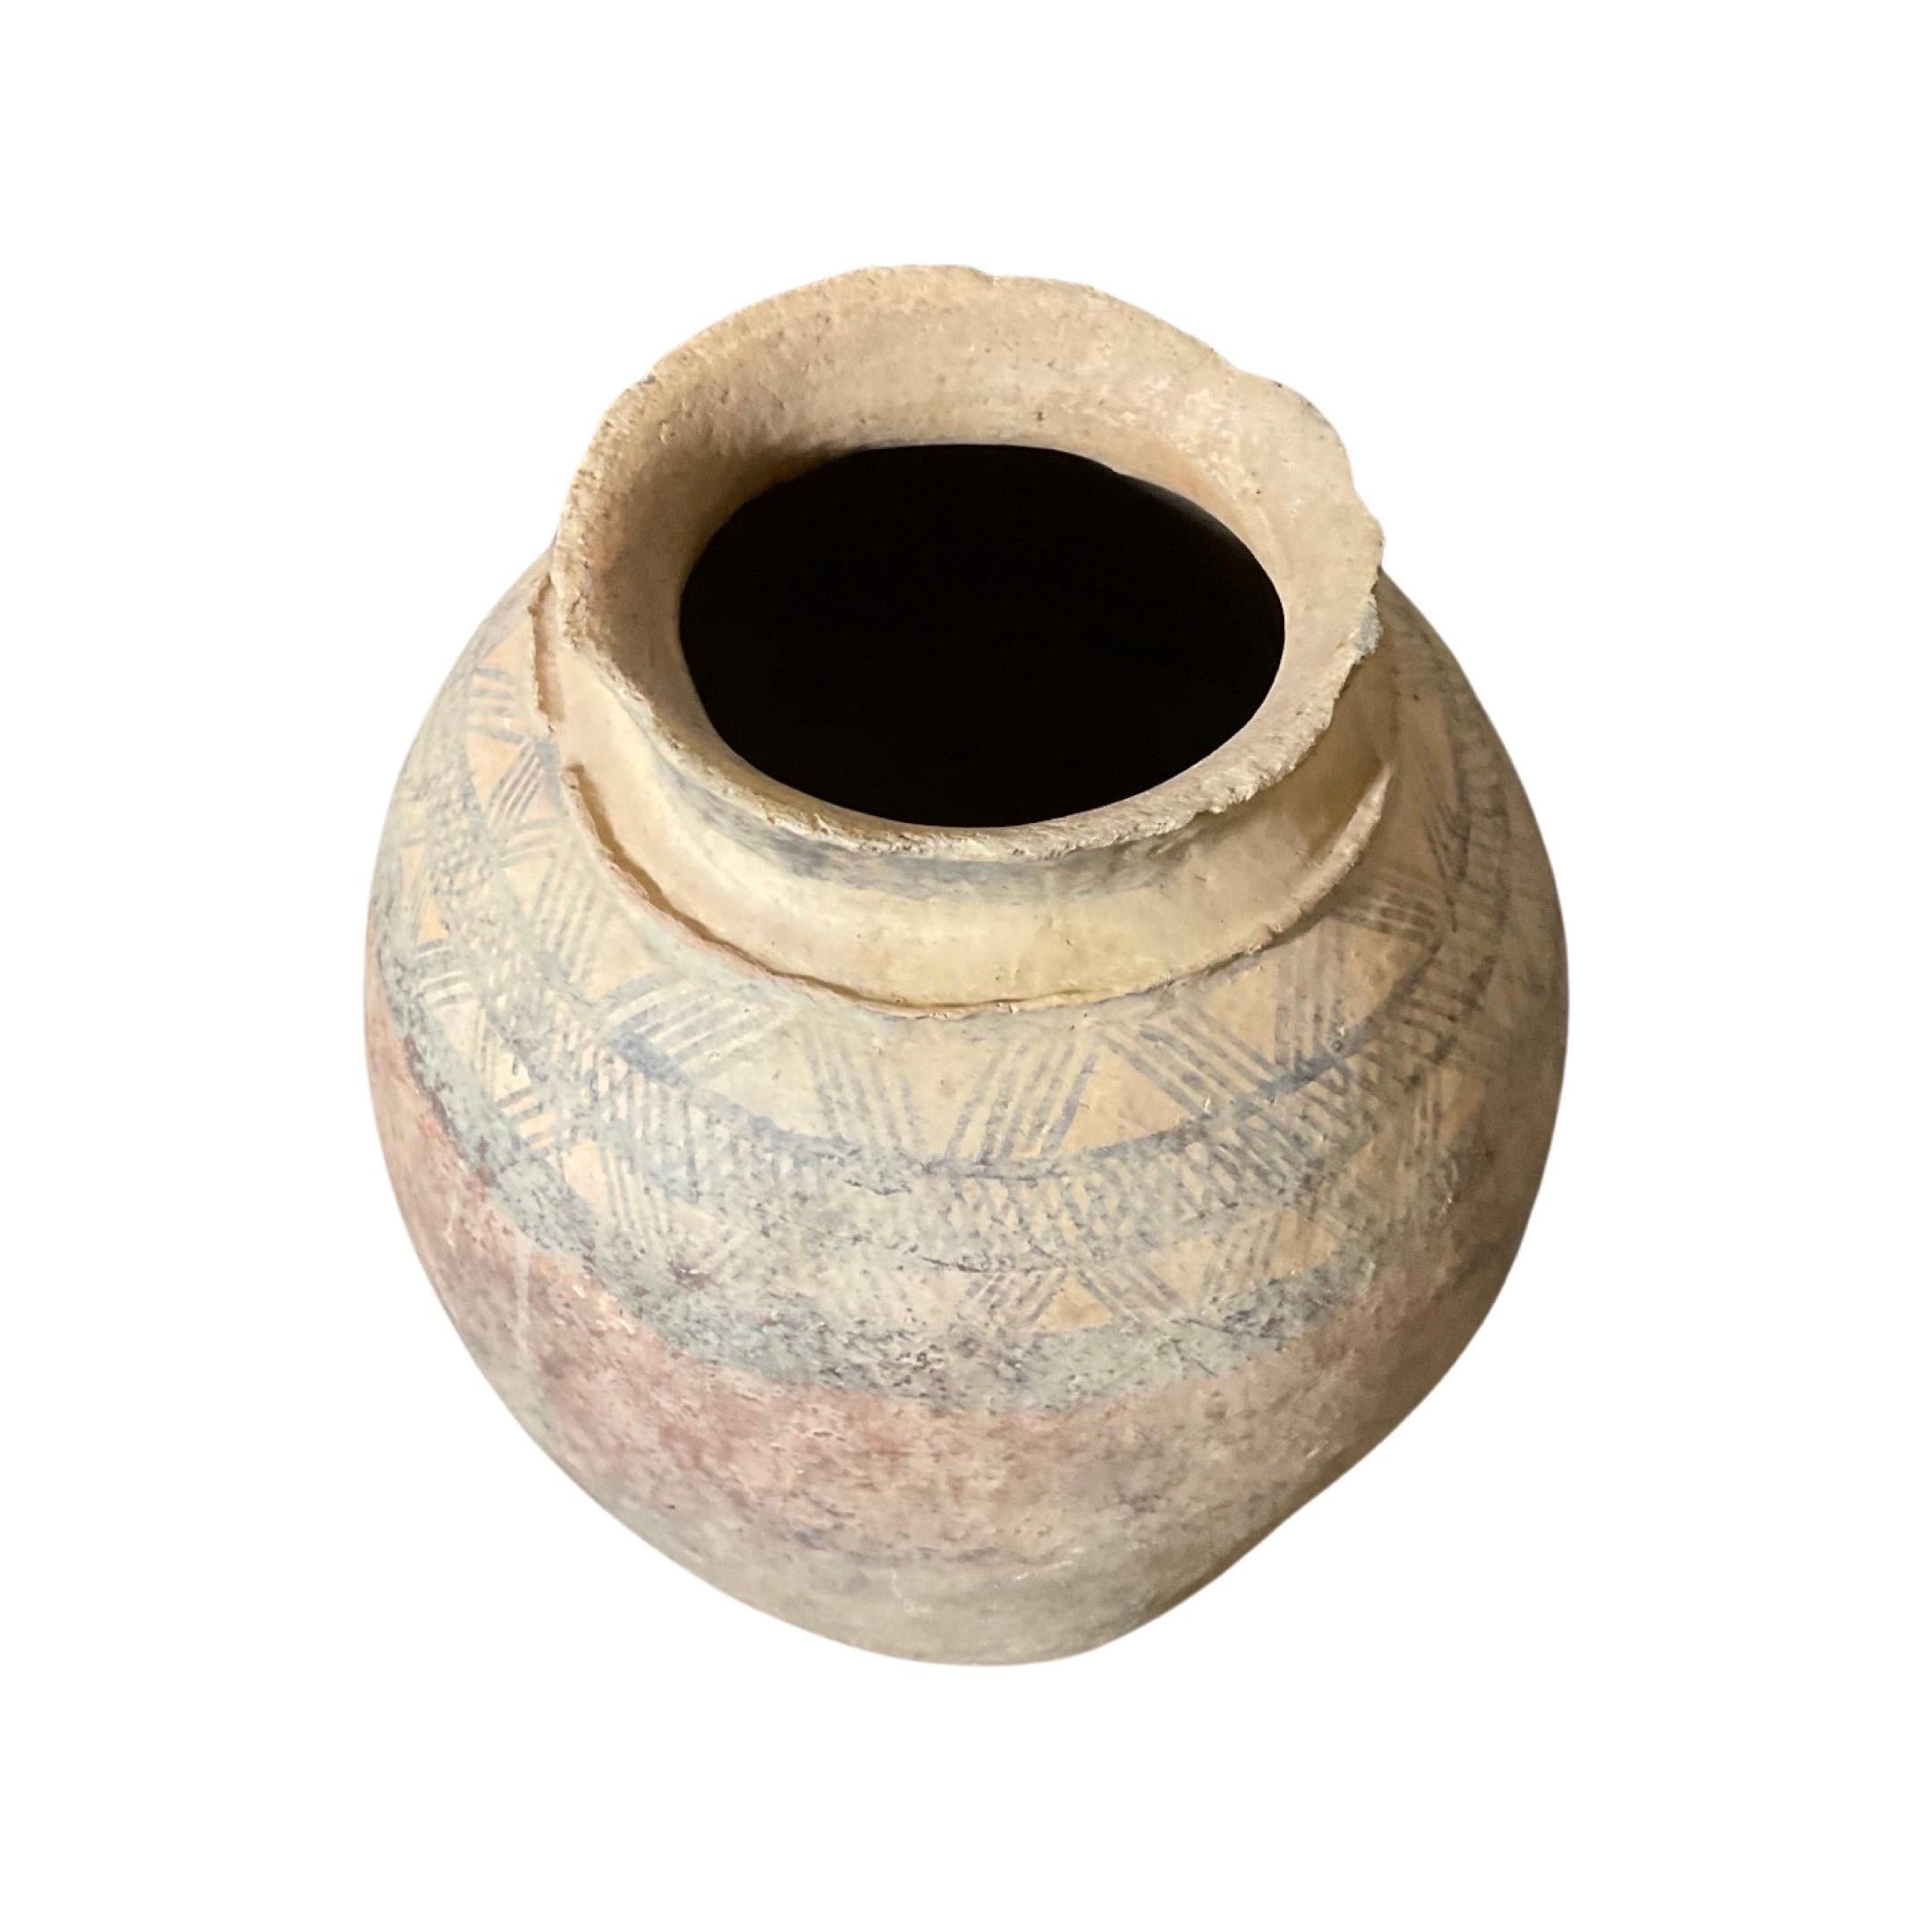 Dieses antike nordafrikanische Terrakotta-Gefäß ist ein seltener Fund, komplett mit einer stabilen Bodenhalterung für zusätzliche Stabilität. Die verblassten und einzigartigen afrikanisch inspirierten Designs, die bis in die Mitte des 18.